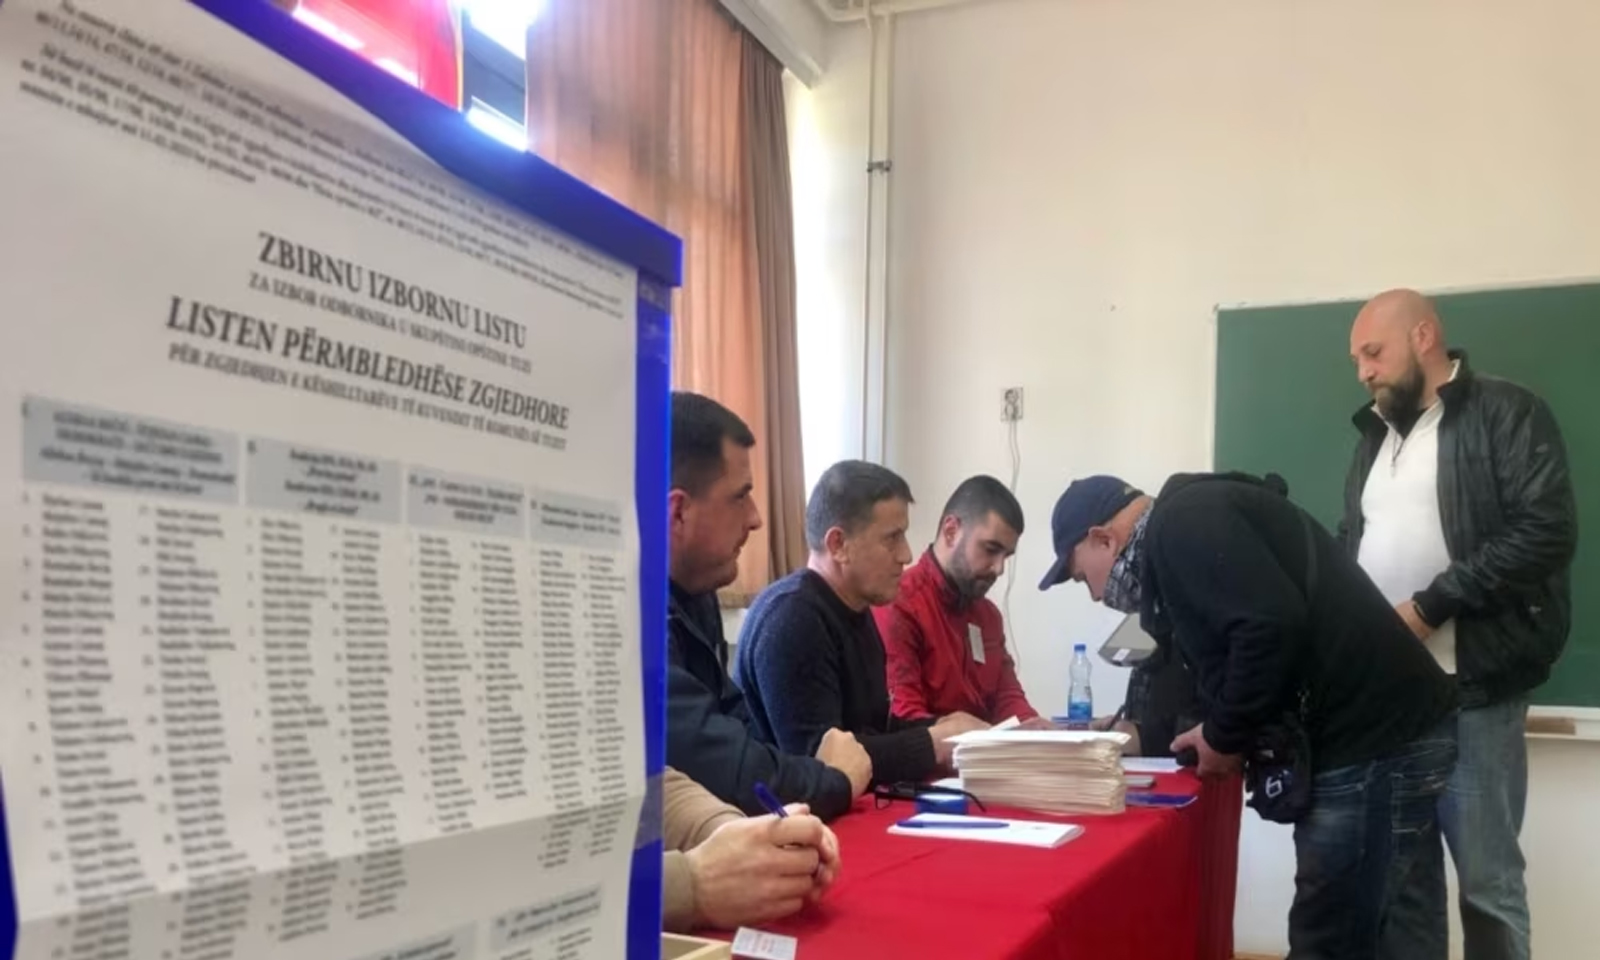 Koalicioni "Forumi Shqiptar" fiton zgjedhjet në Tuz - NTV